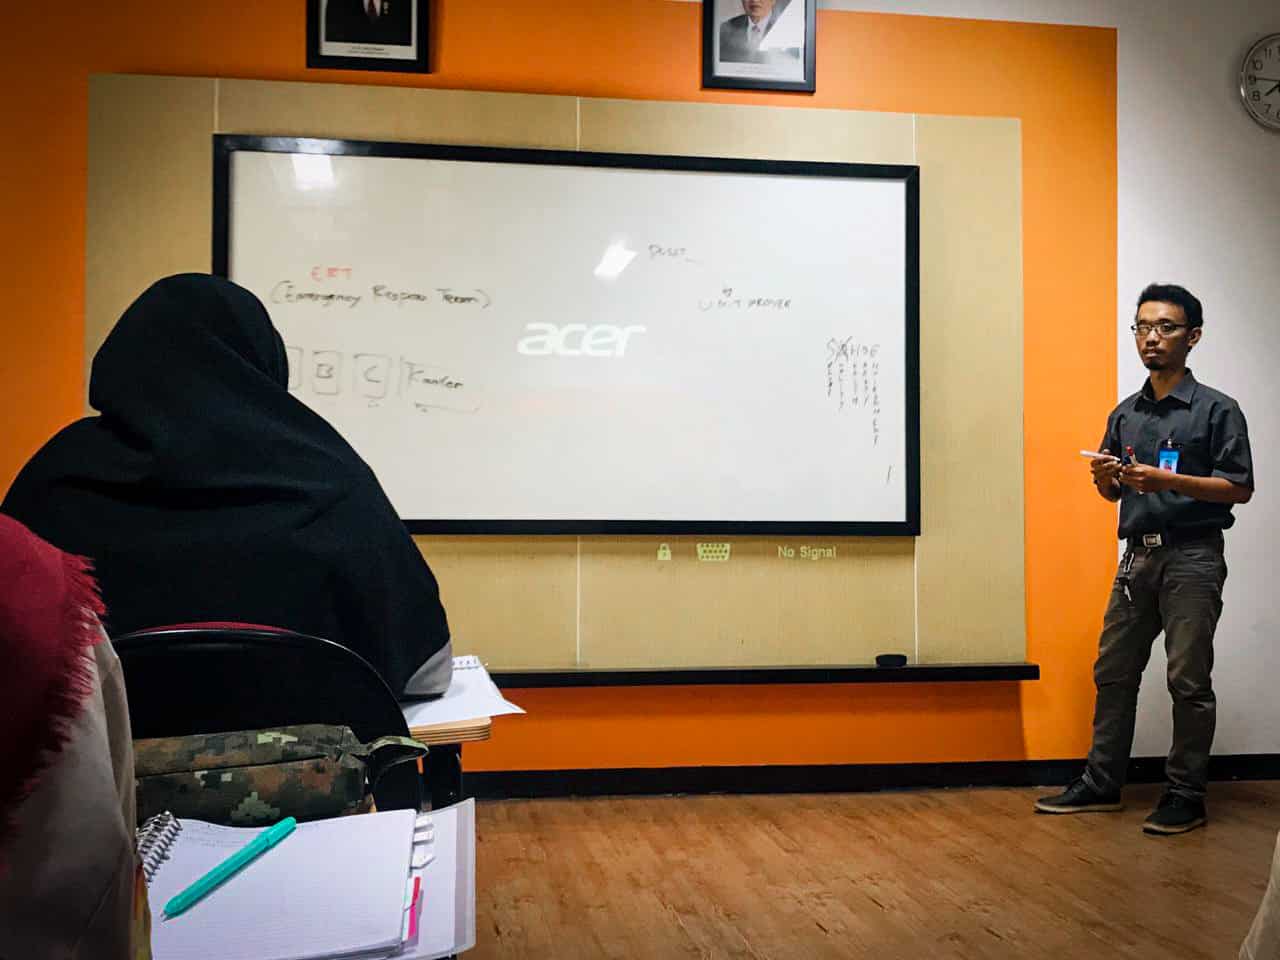 Belajar Bersama Alumni, Amry Aminuzal Alumni MR Ajarkan Tentang Penerapan Prinsip K3 di Konstruksi dari Pengalamannya